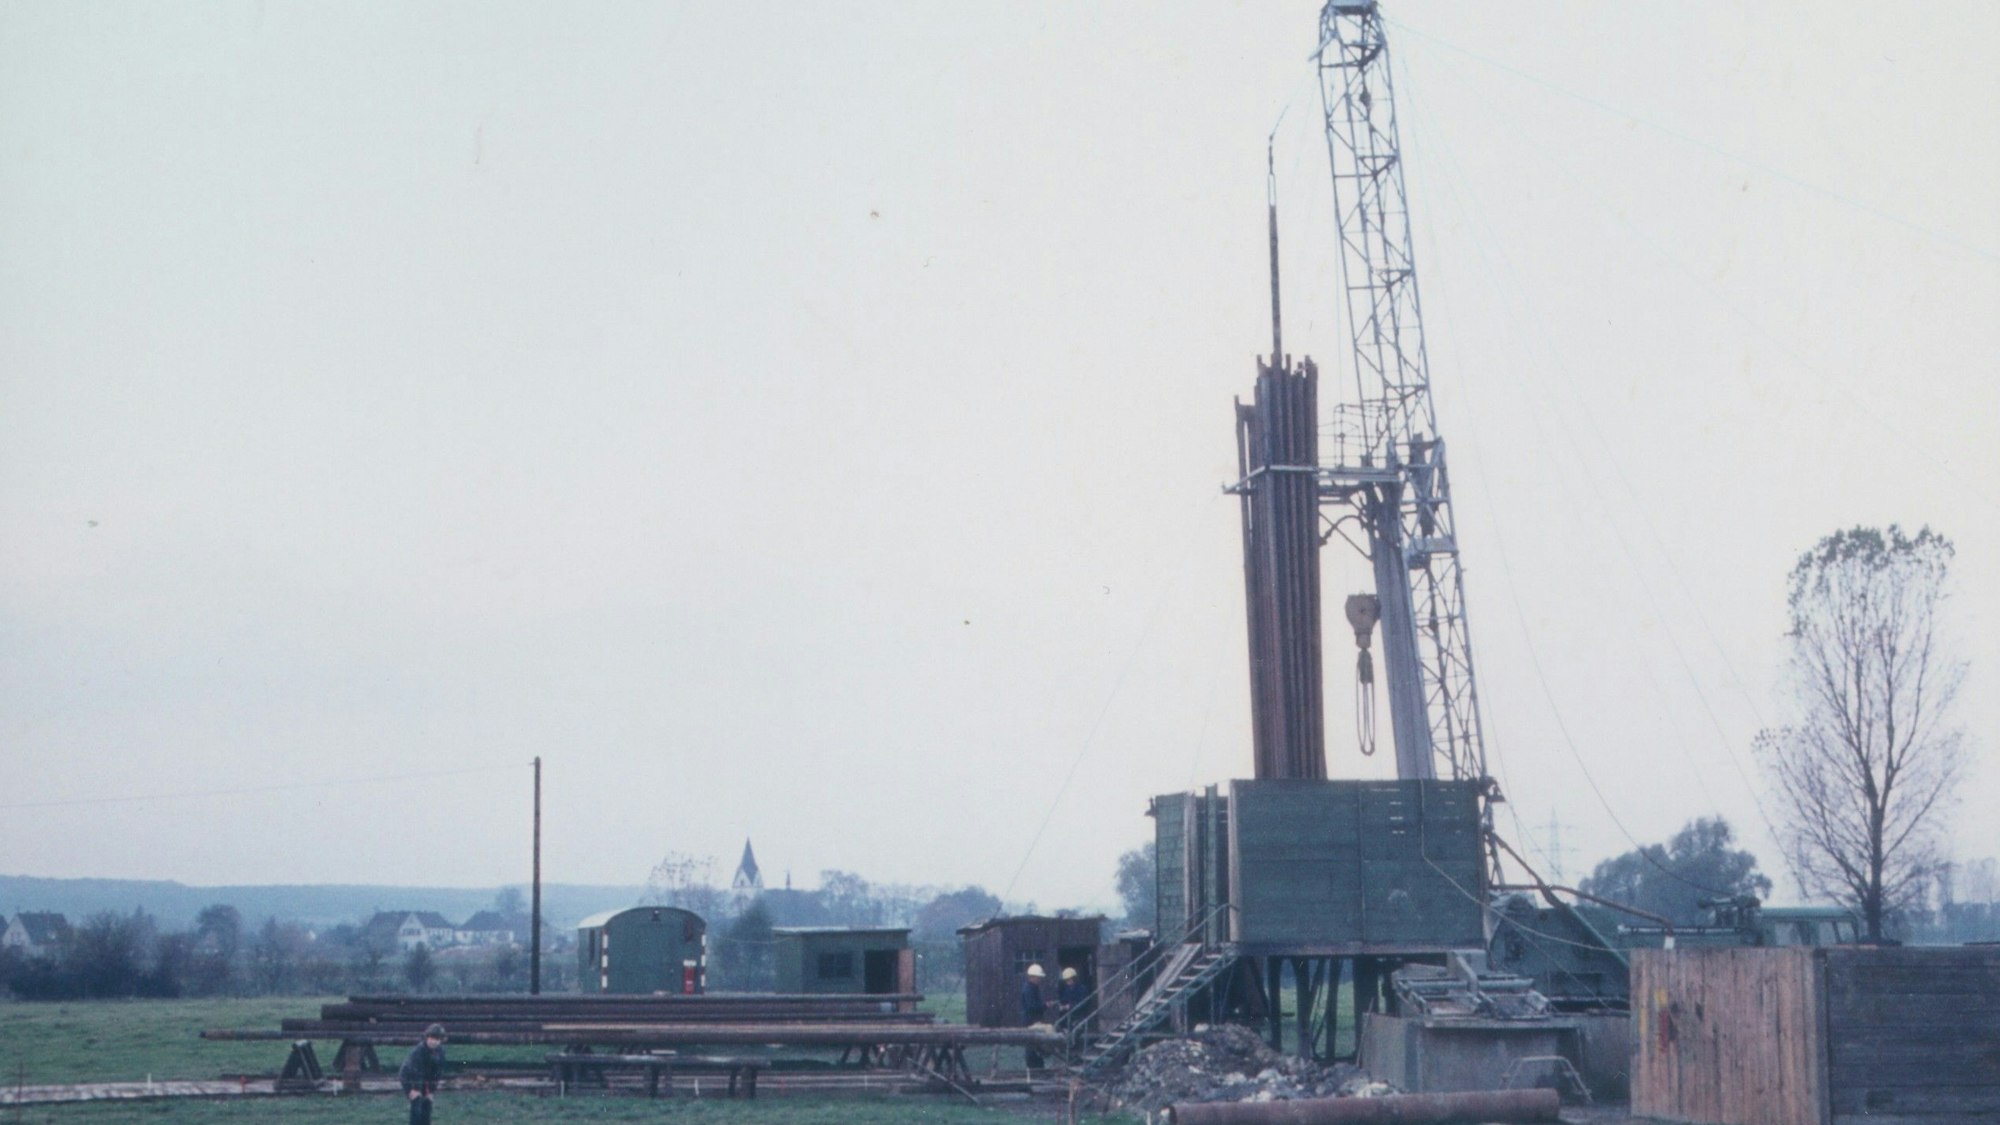 Am 7. August 1972 starteten die Bohrungen zur Erkundung des Bodens in Niederpleis, ein Thermalbad sollte gebaut werden.